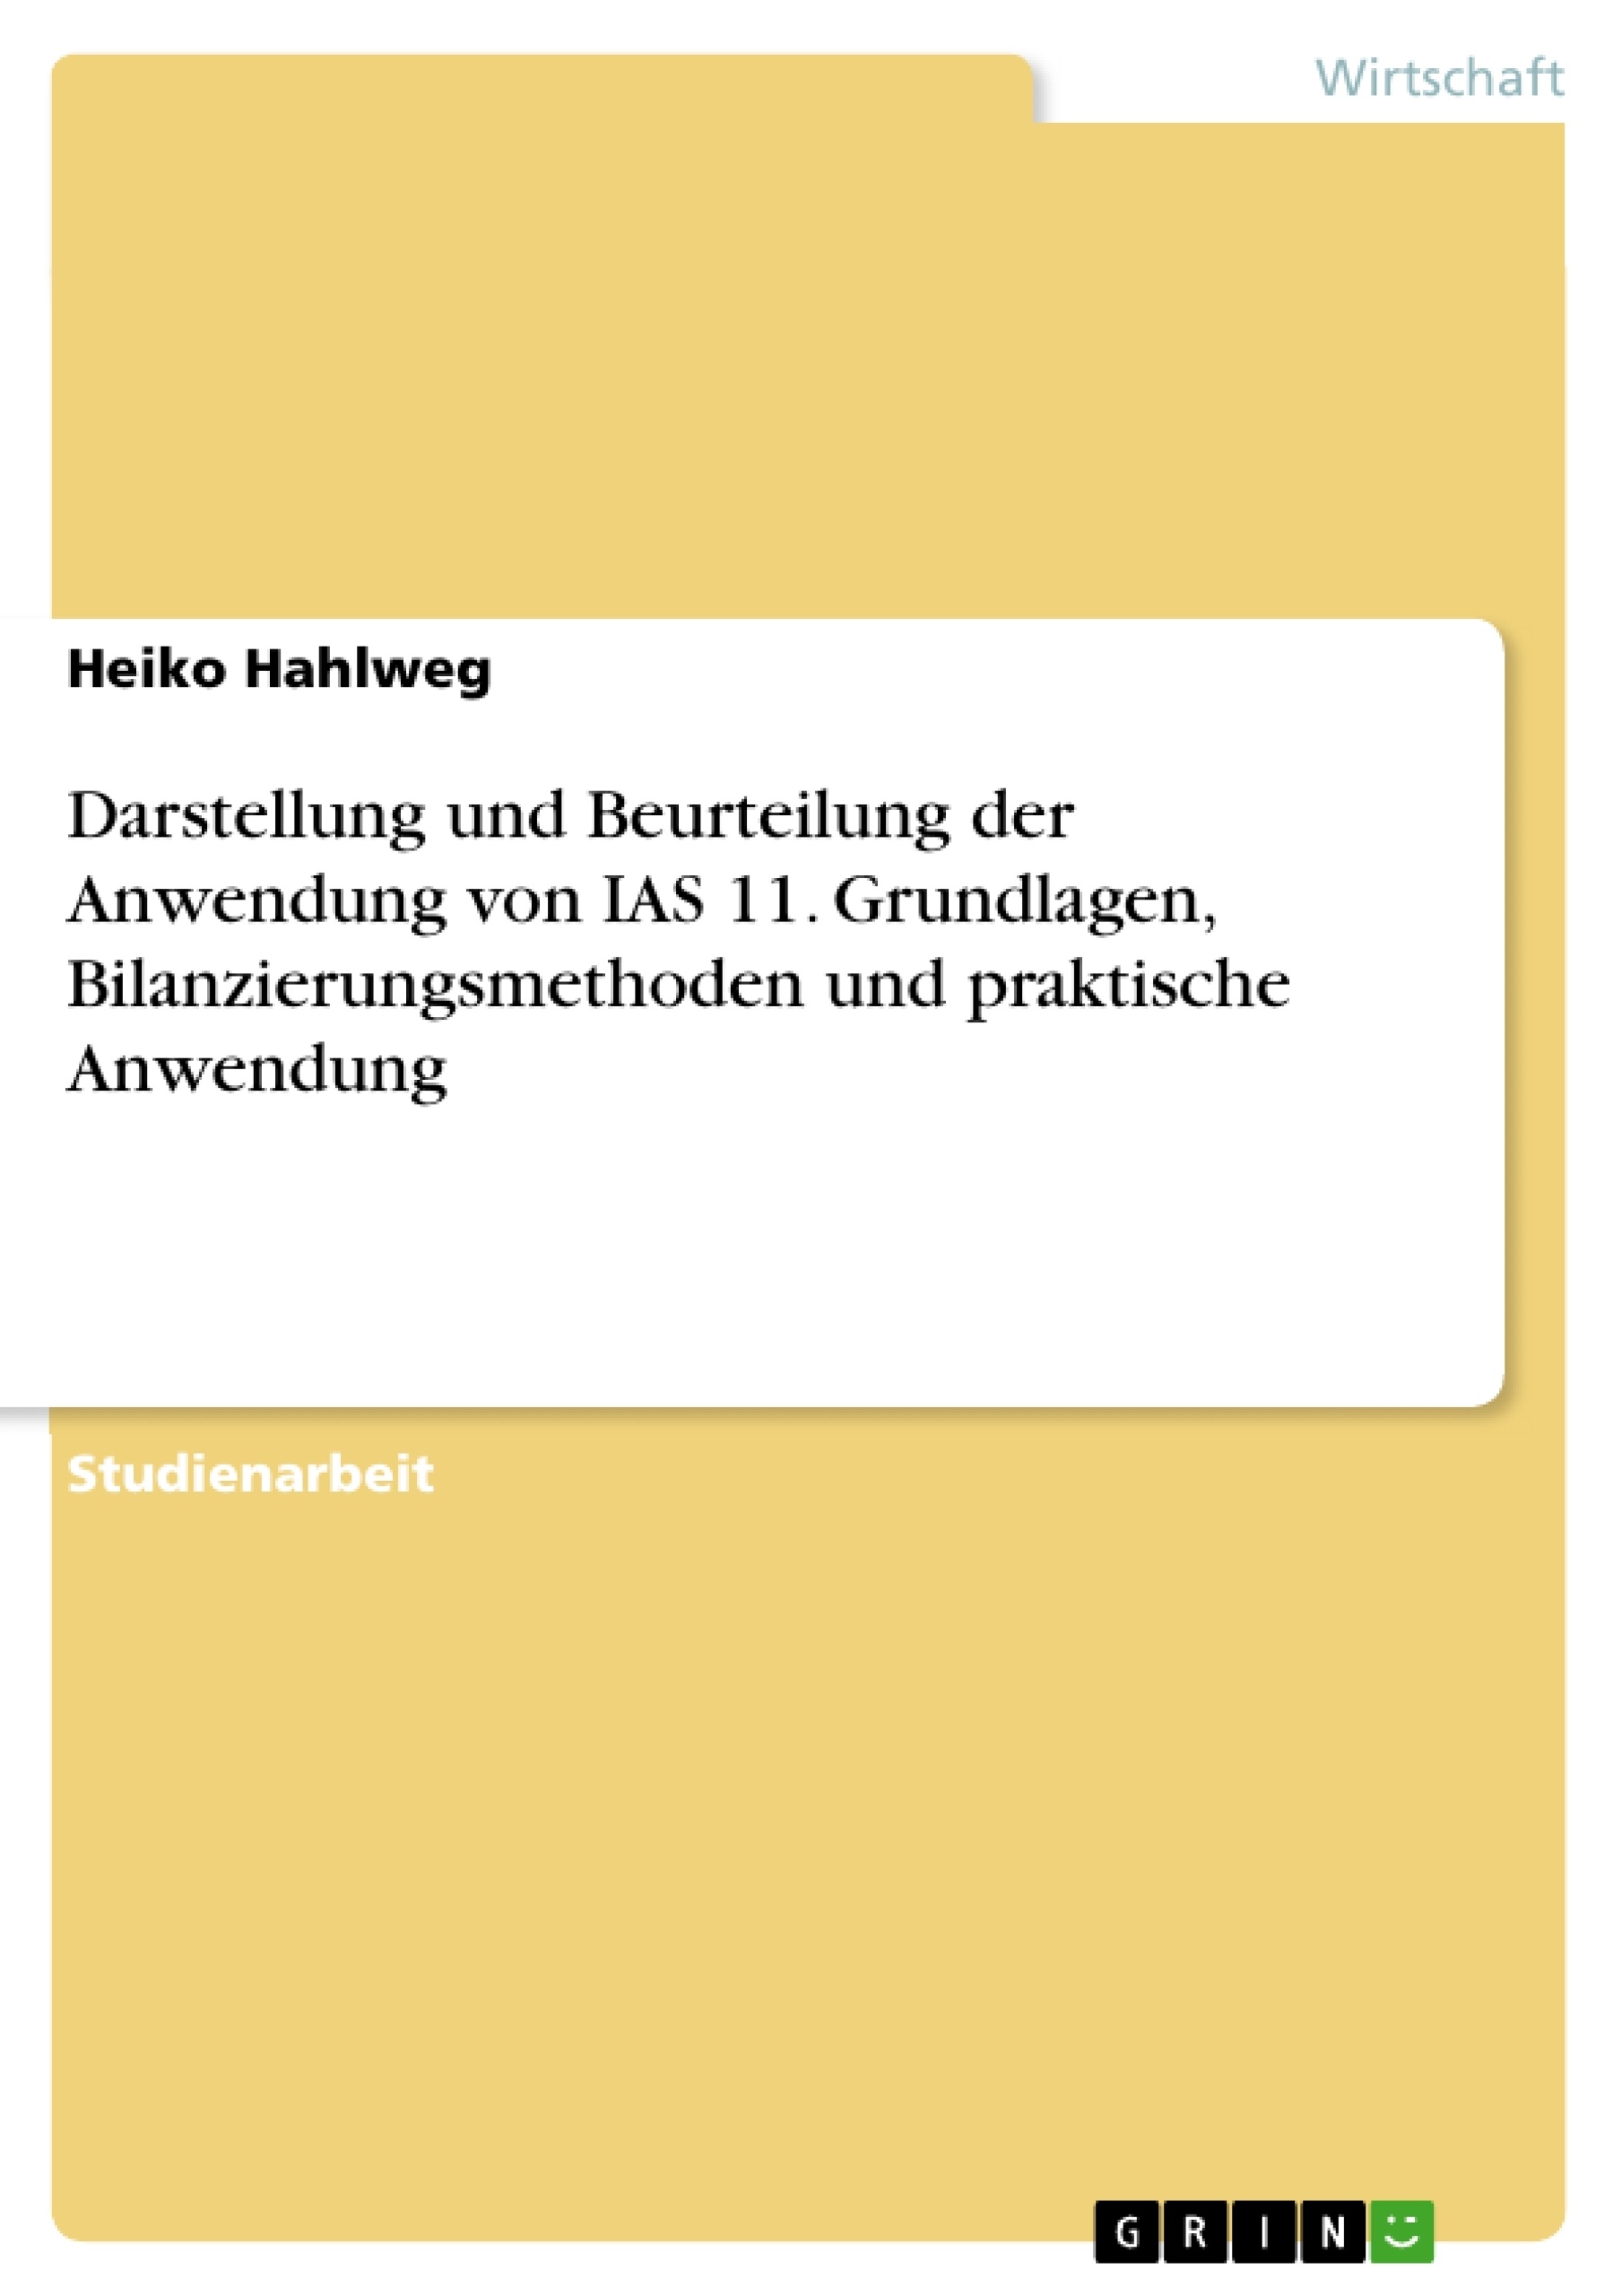 Title: Darstellung und Beurteilung der Anwendung von IAS 11. Grundlagen, Bilanzierungsmethoden und praktische Anwendung